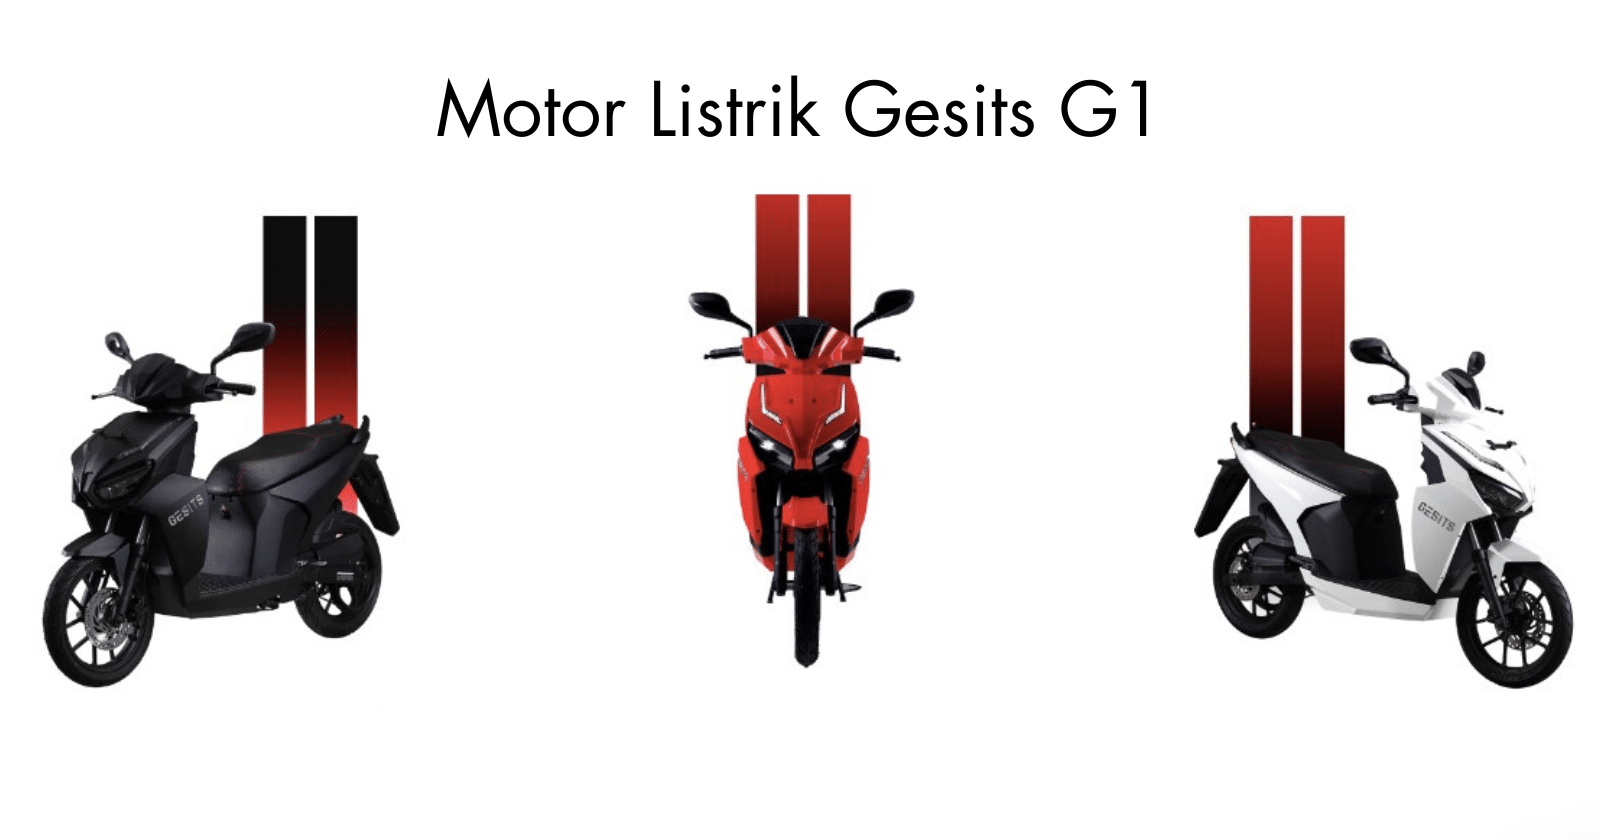 performa motor listrik Gesits G1